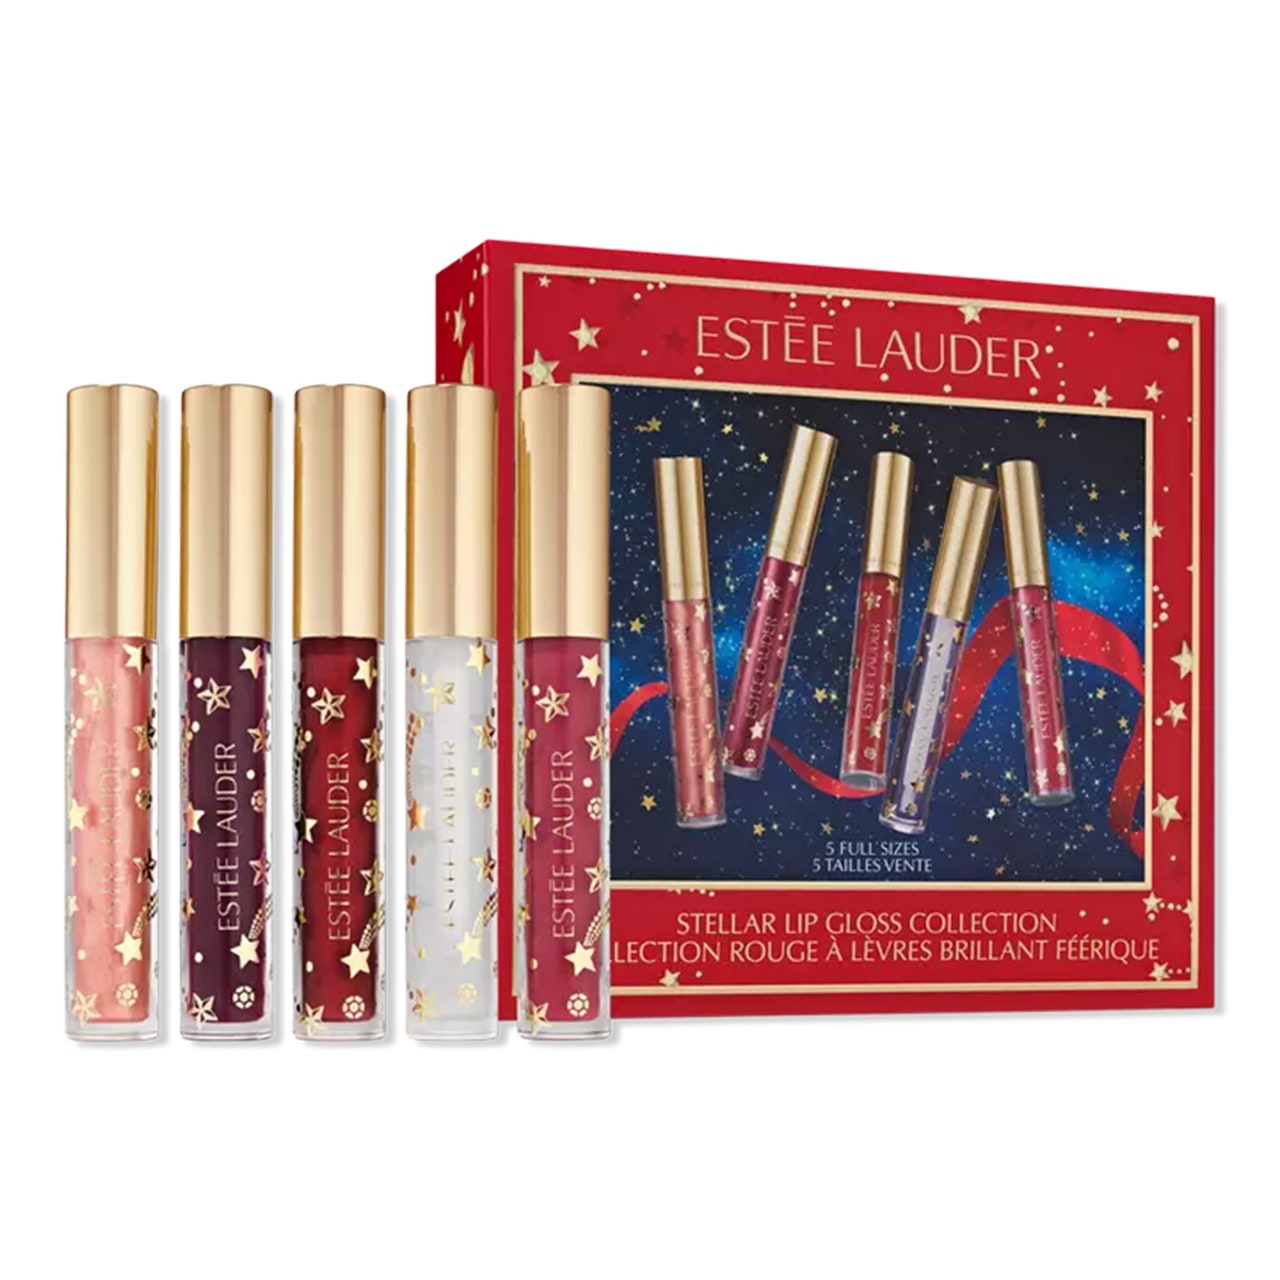 Estée Lauder Stellar Lip Gloss Collection Holiday Makeup Gift Set fünf Lipglosse mit goldenen Kappen und roter Weihnachtsbox auf weißem Hintergrund